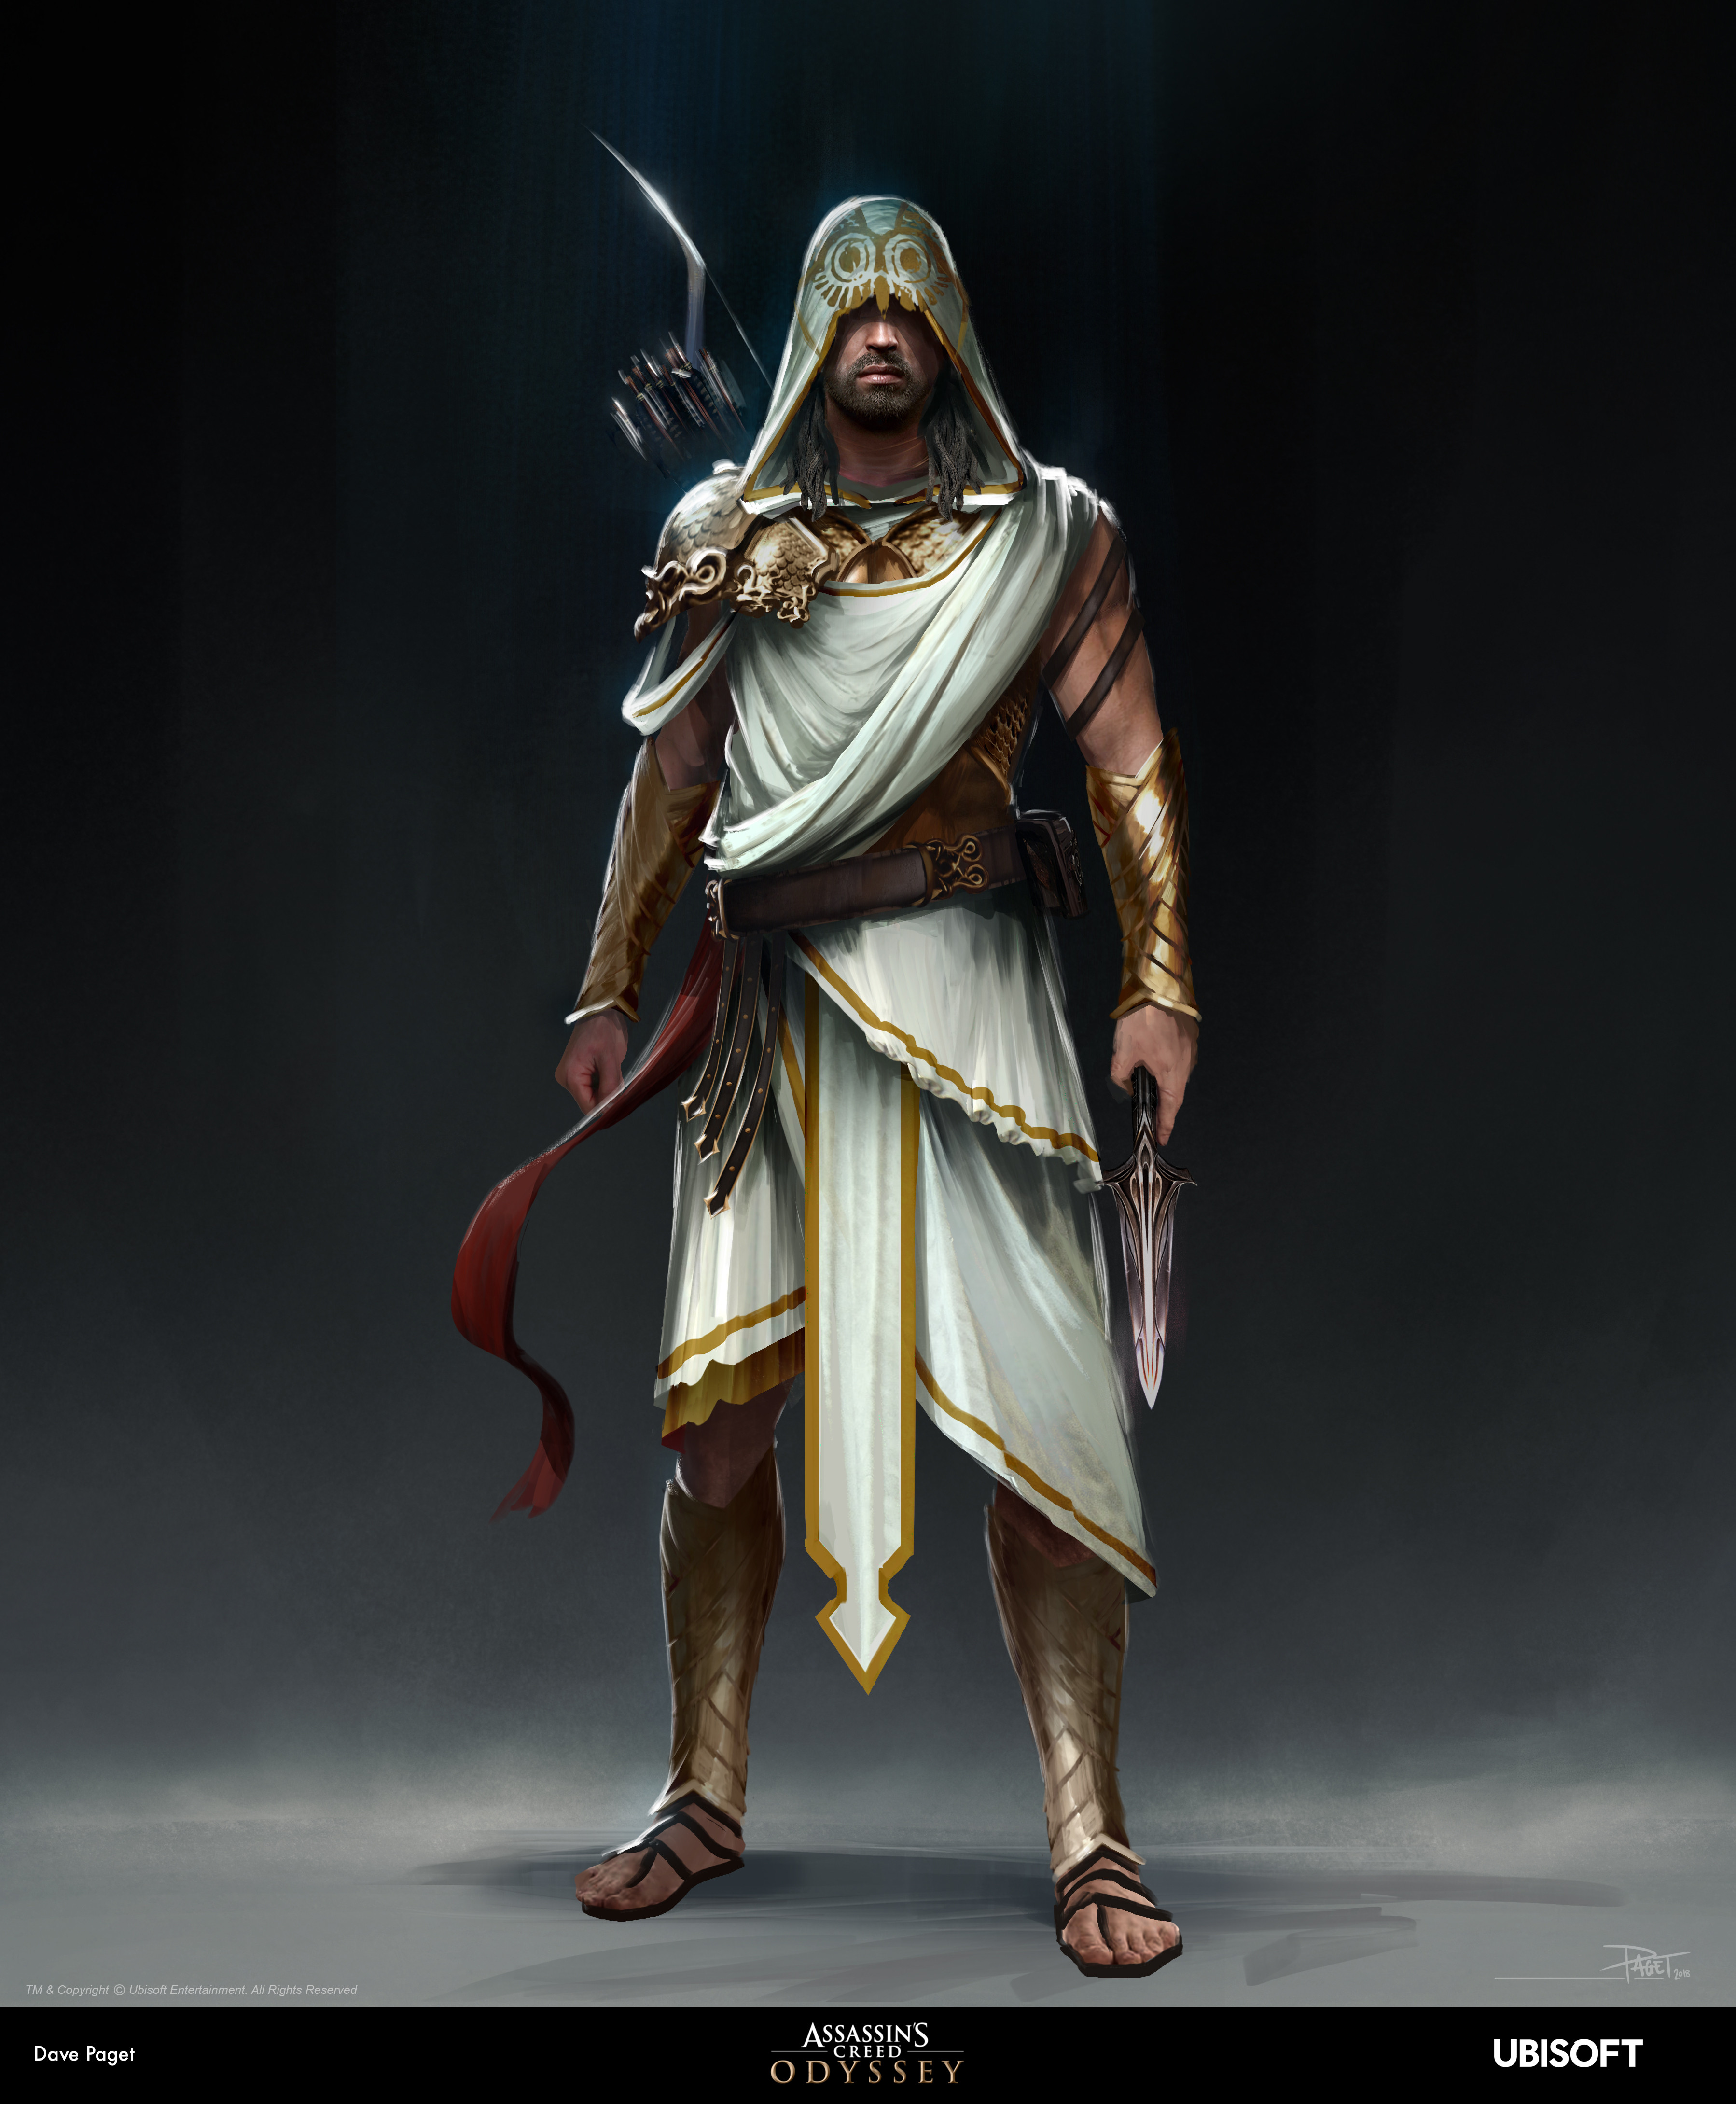 David Paget - Creed Odyssey: Athena Armour